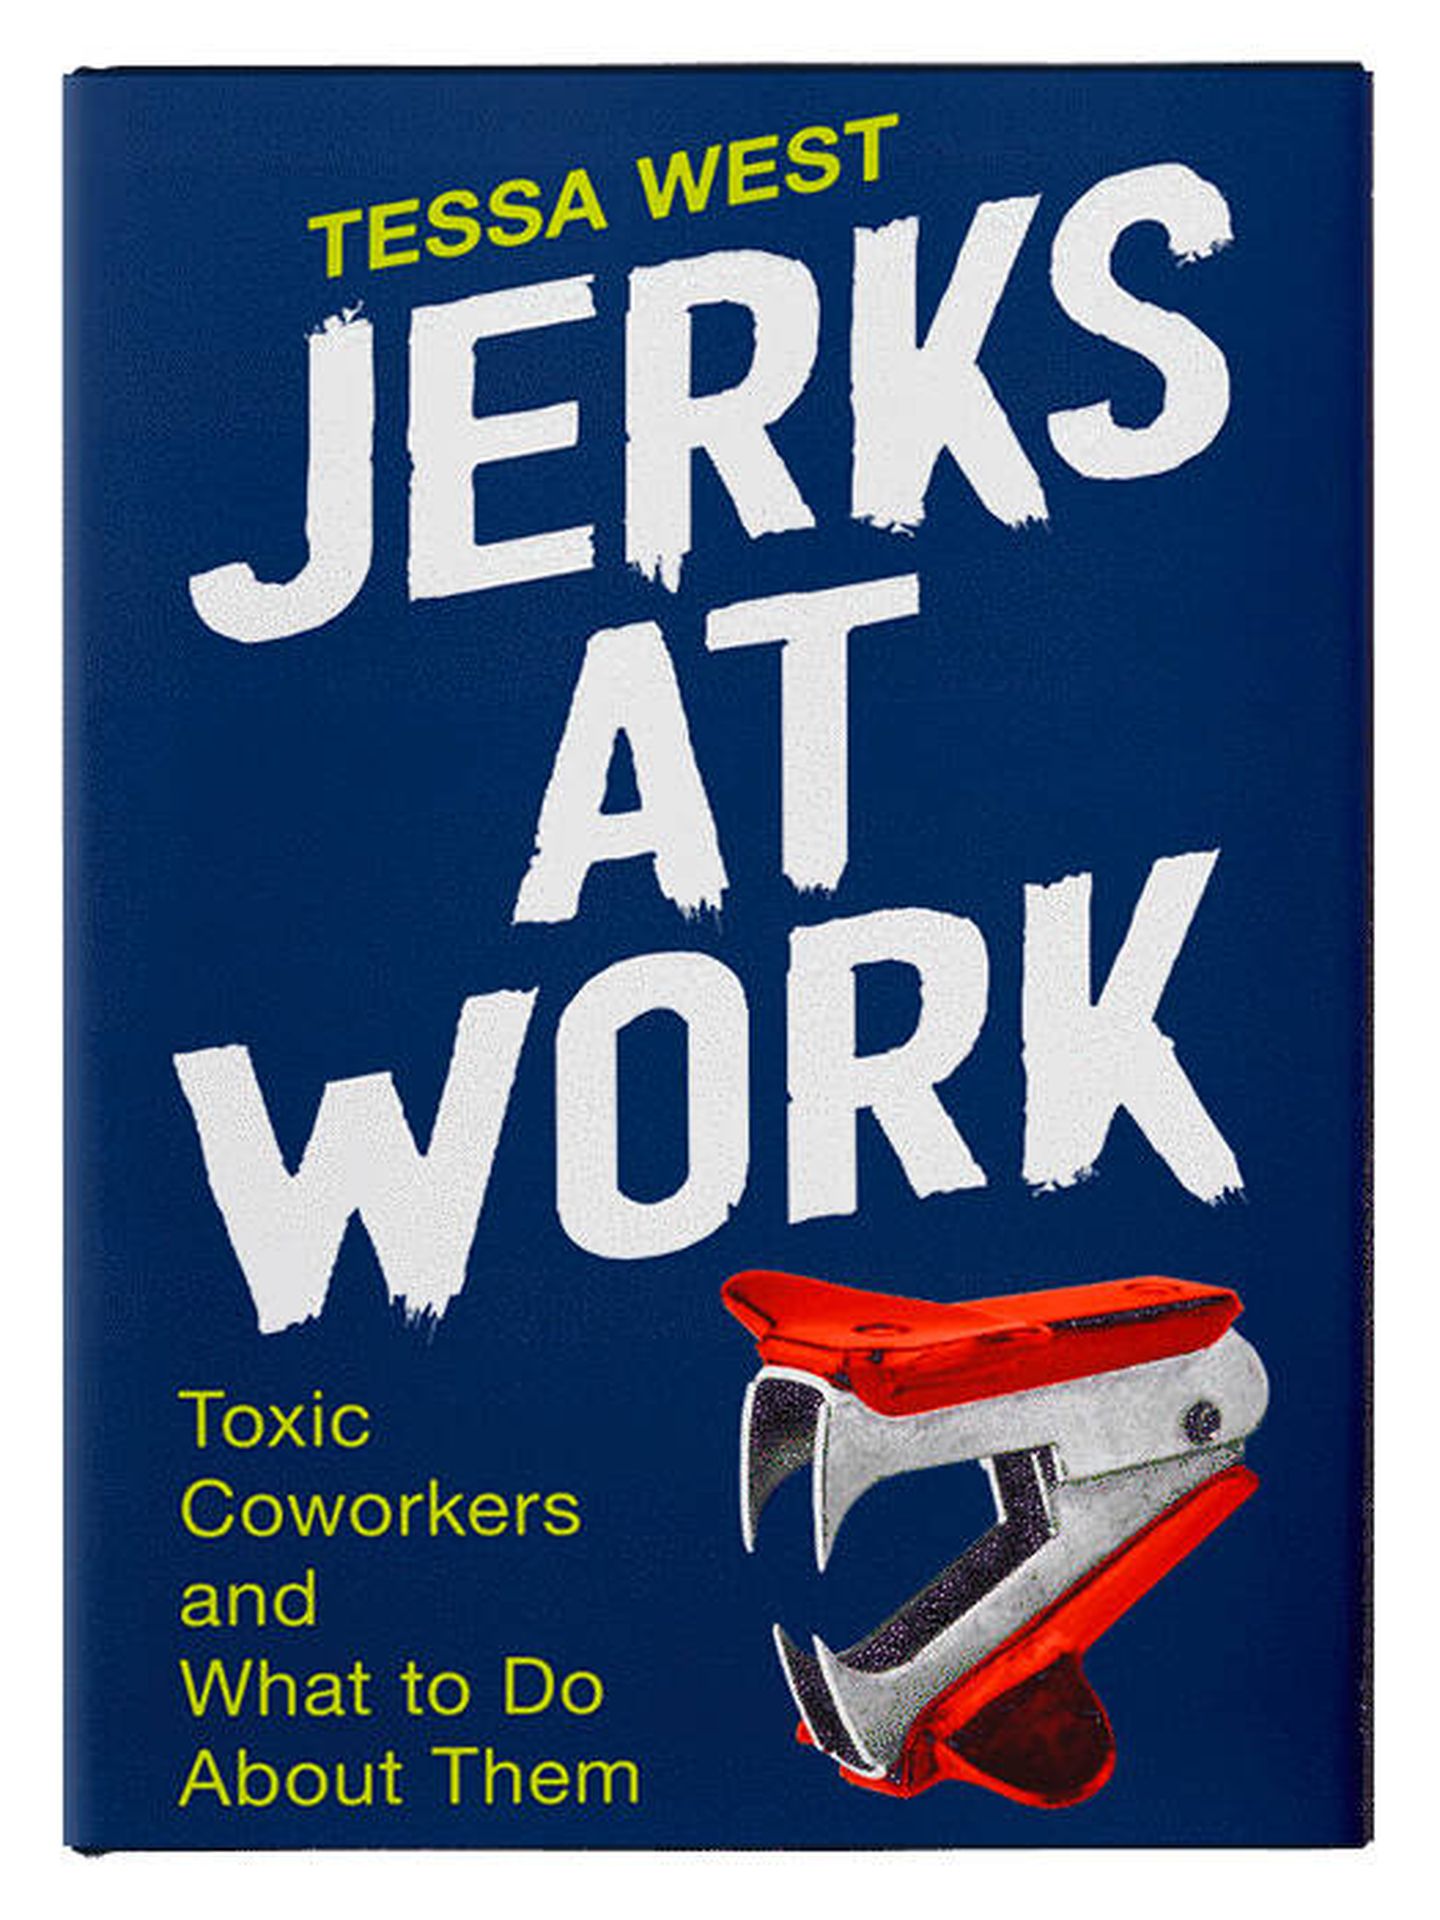 Portada de 'Jerks at Work'.